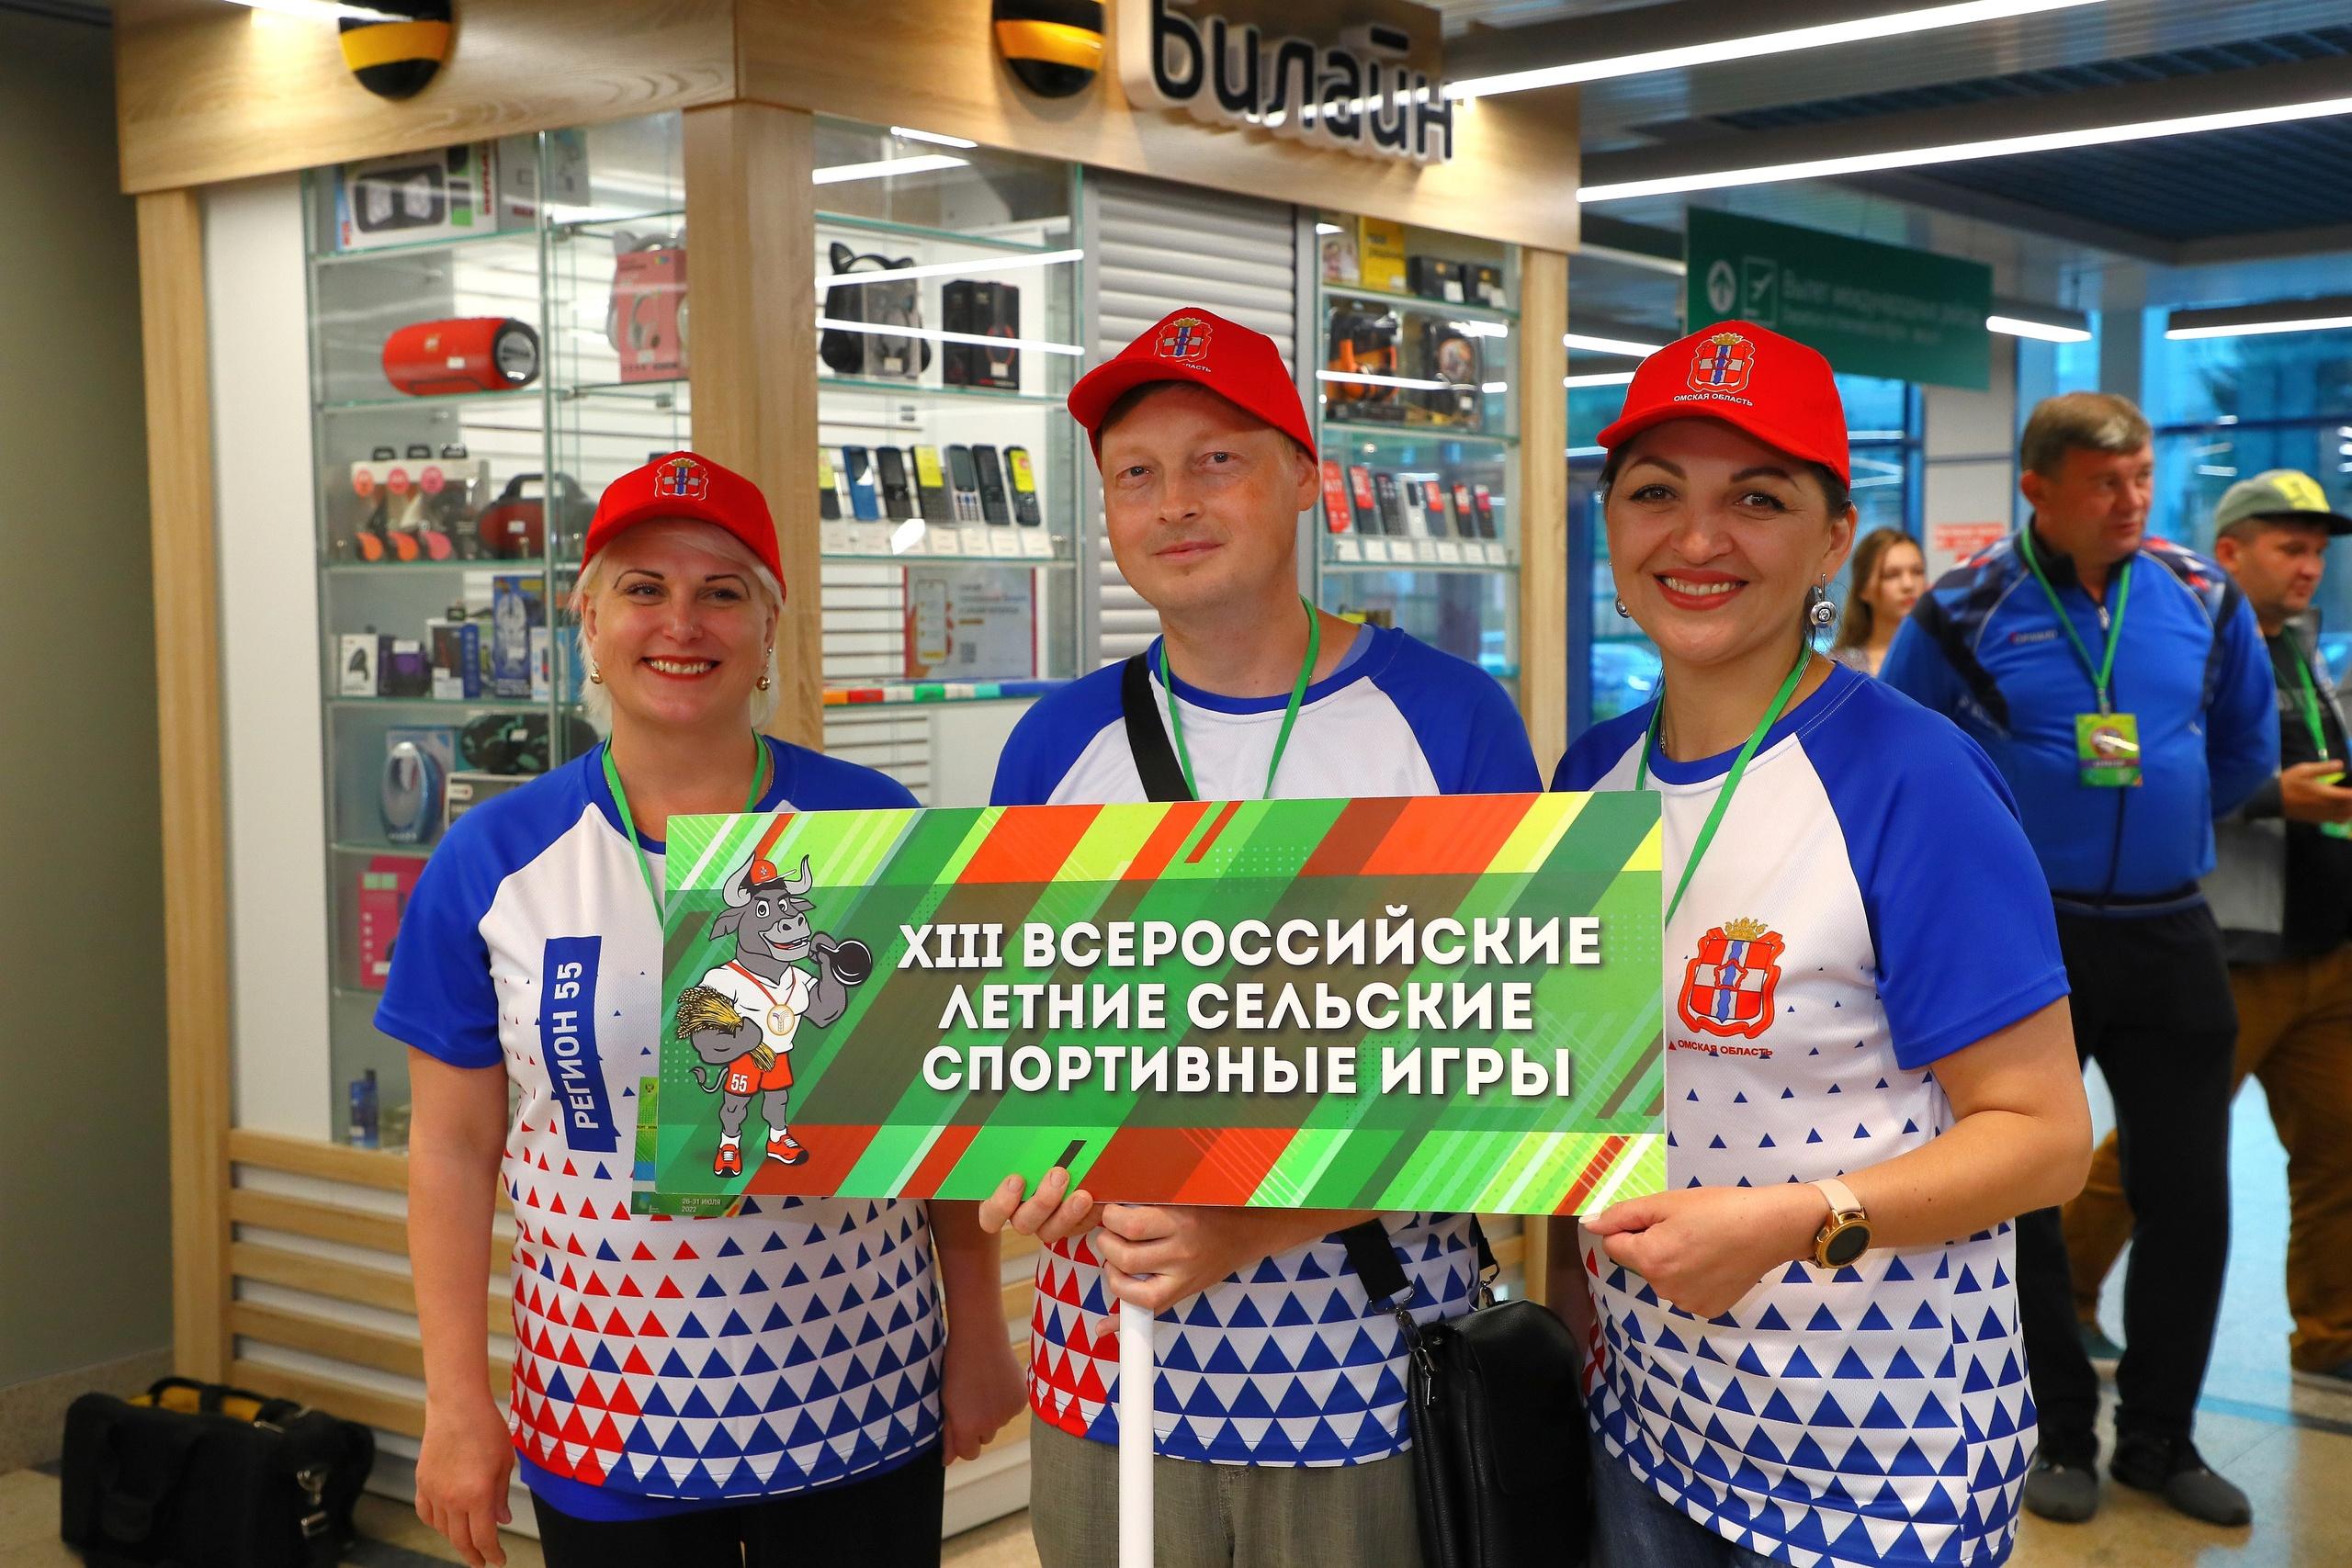  Всероссийские летние сельские спортивные игры в Омске